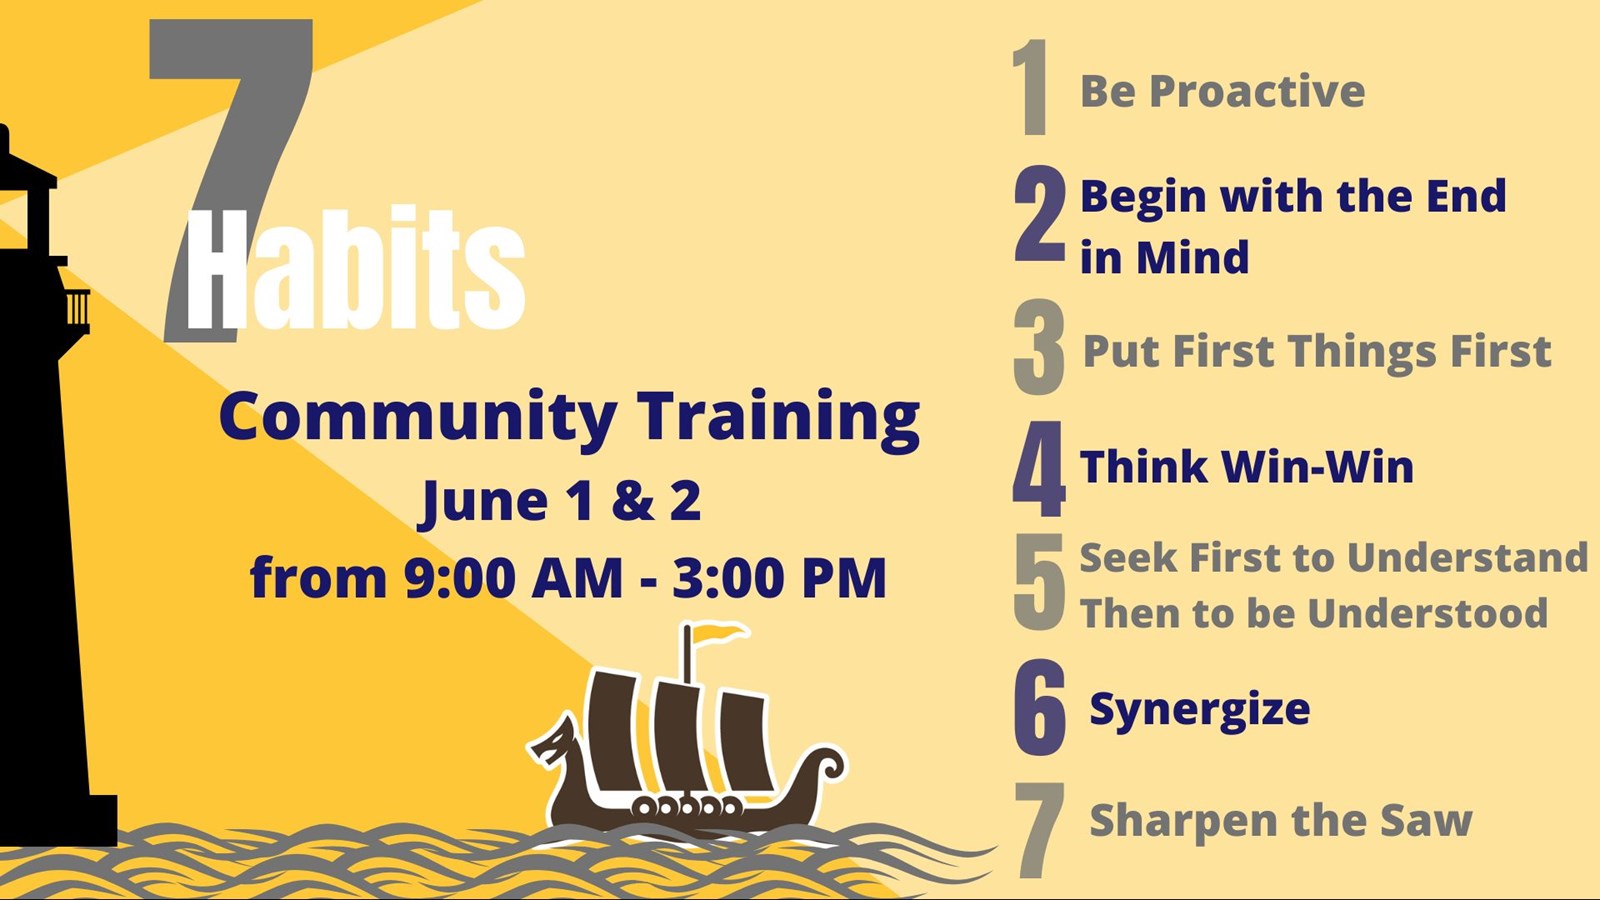 7 Habits Community Training Days